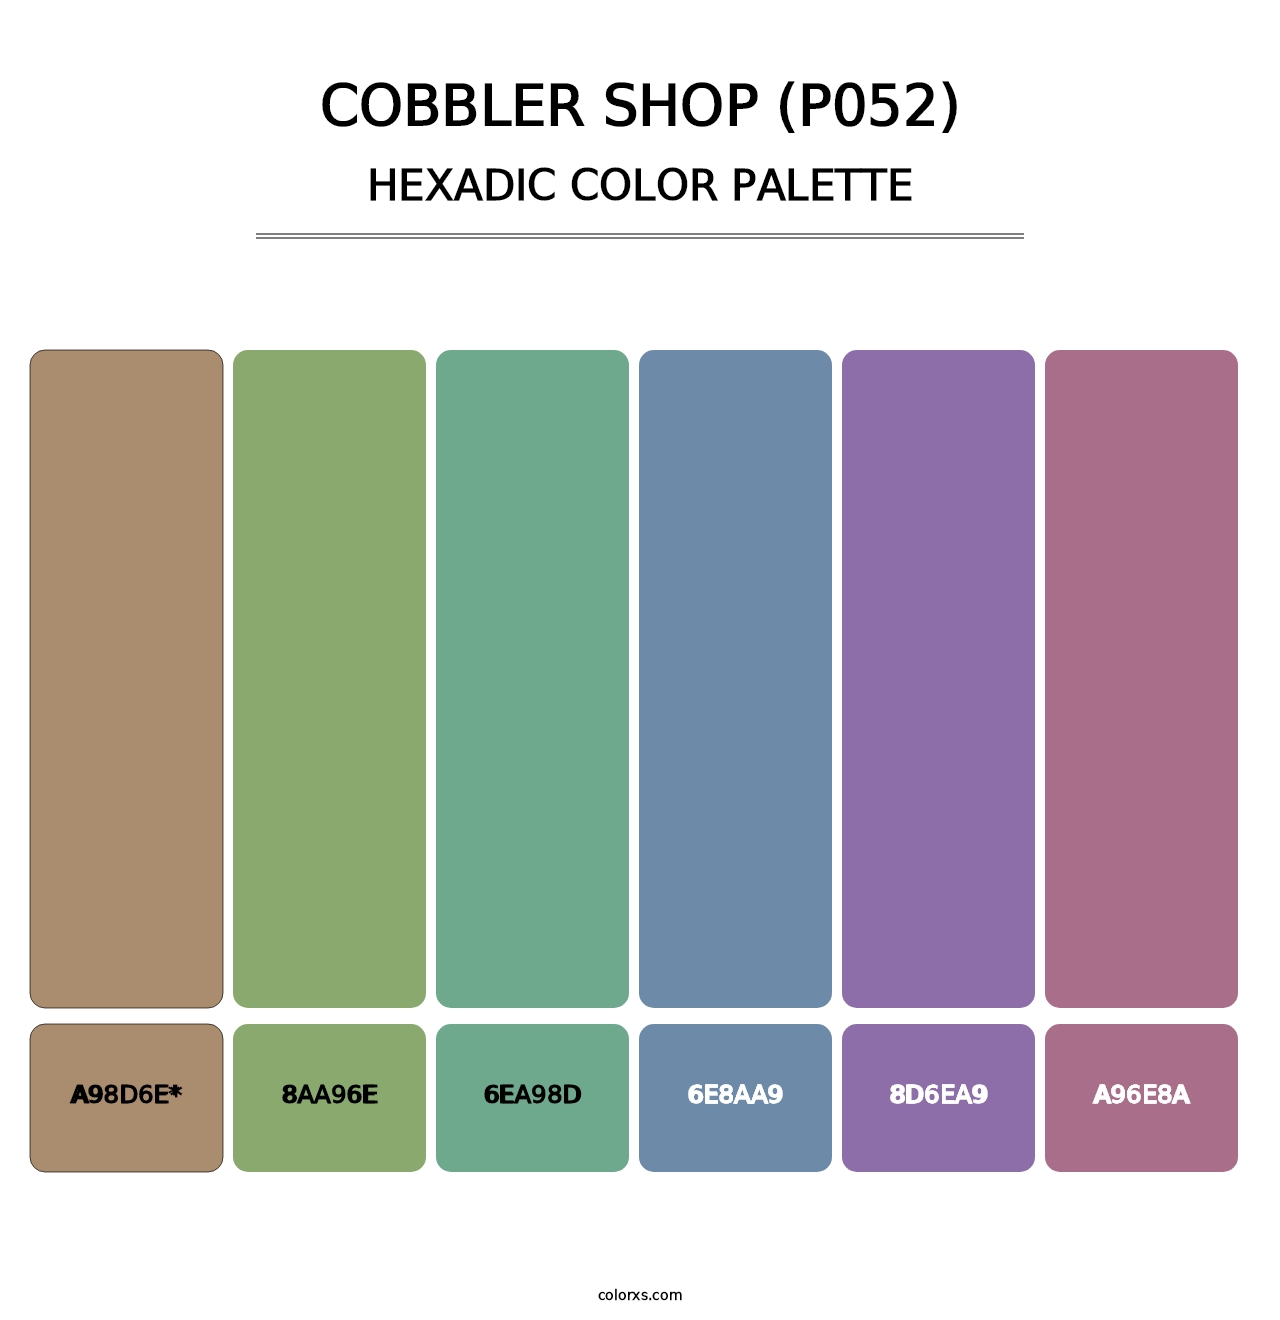 Cobbler Shop (P052) - Hexadic Color Palette